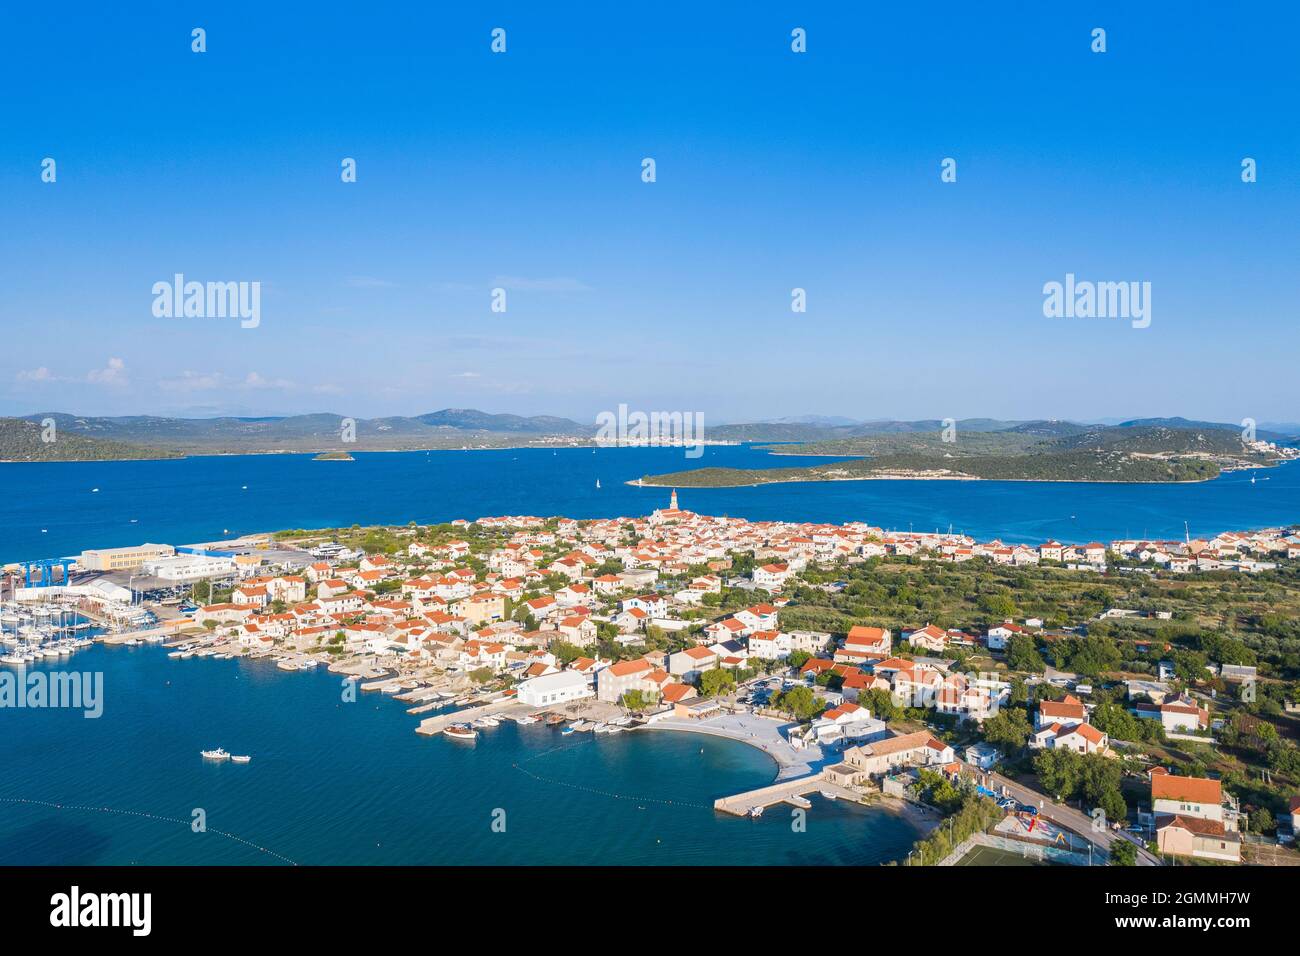 Vue aérienne de la ville de Betina sur l'île de Murter, Dalmatie, Croatie Banque D'Images